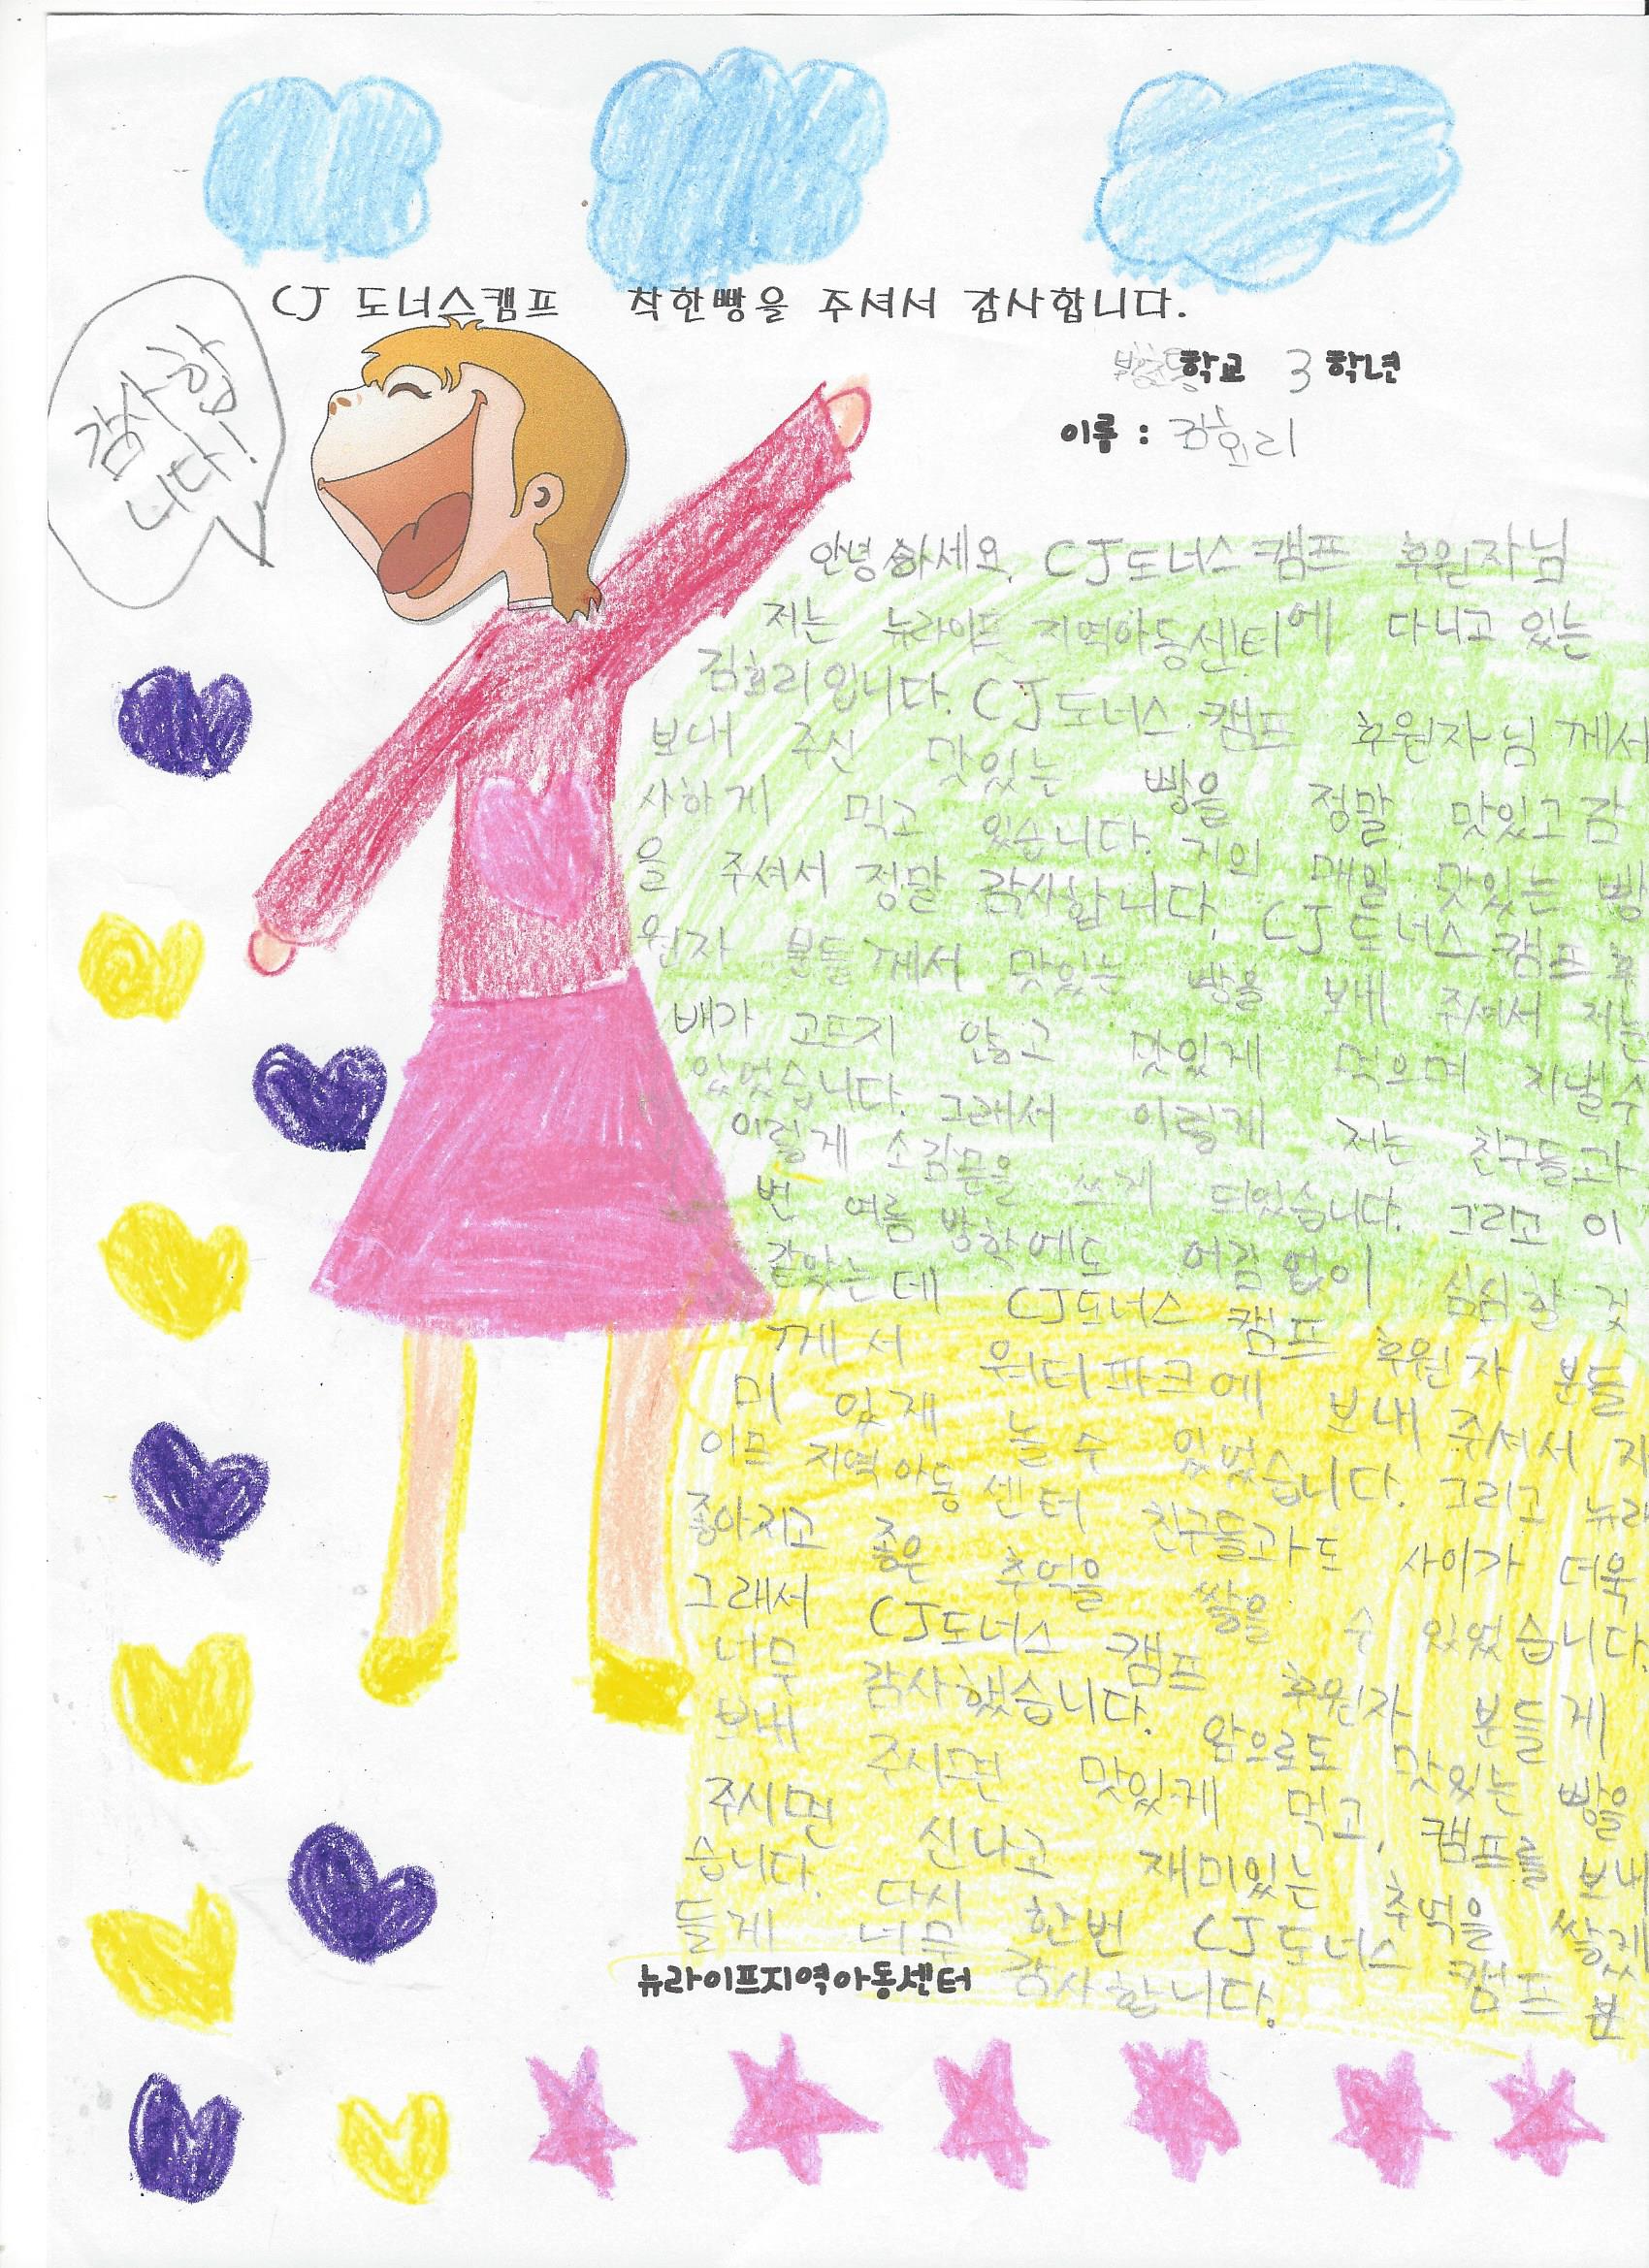 김효리 학생의 감사편지 입니다.